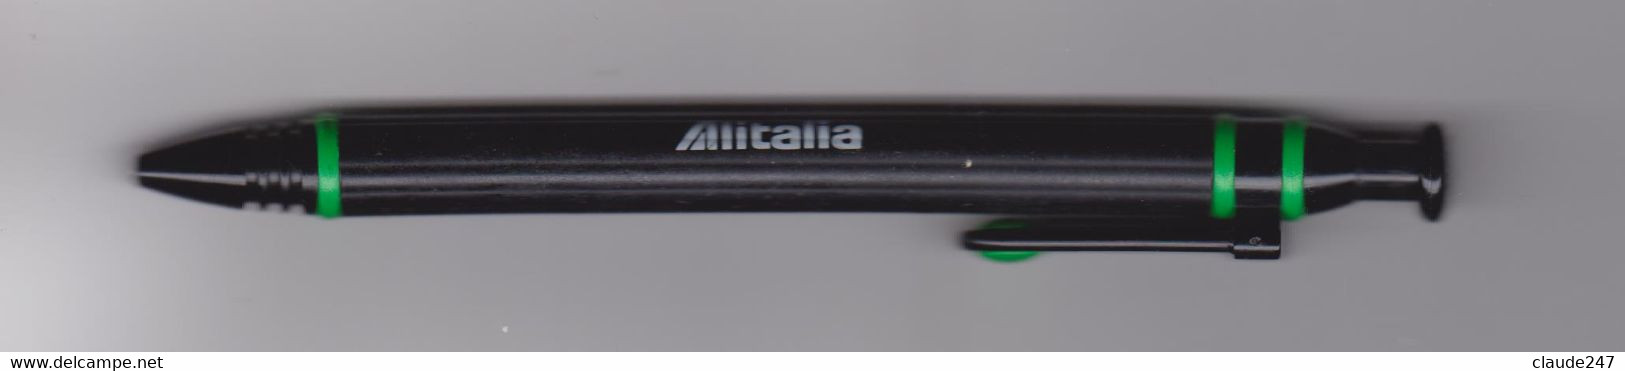 Alitalia Penna Biro Anni 1980/1990 - Regalos